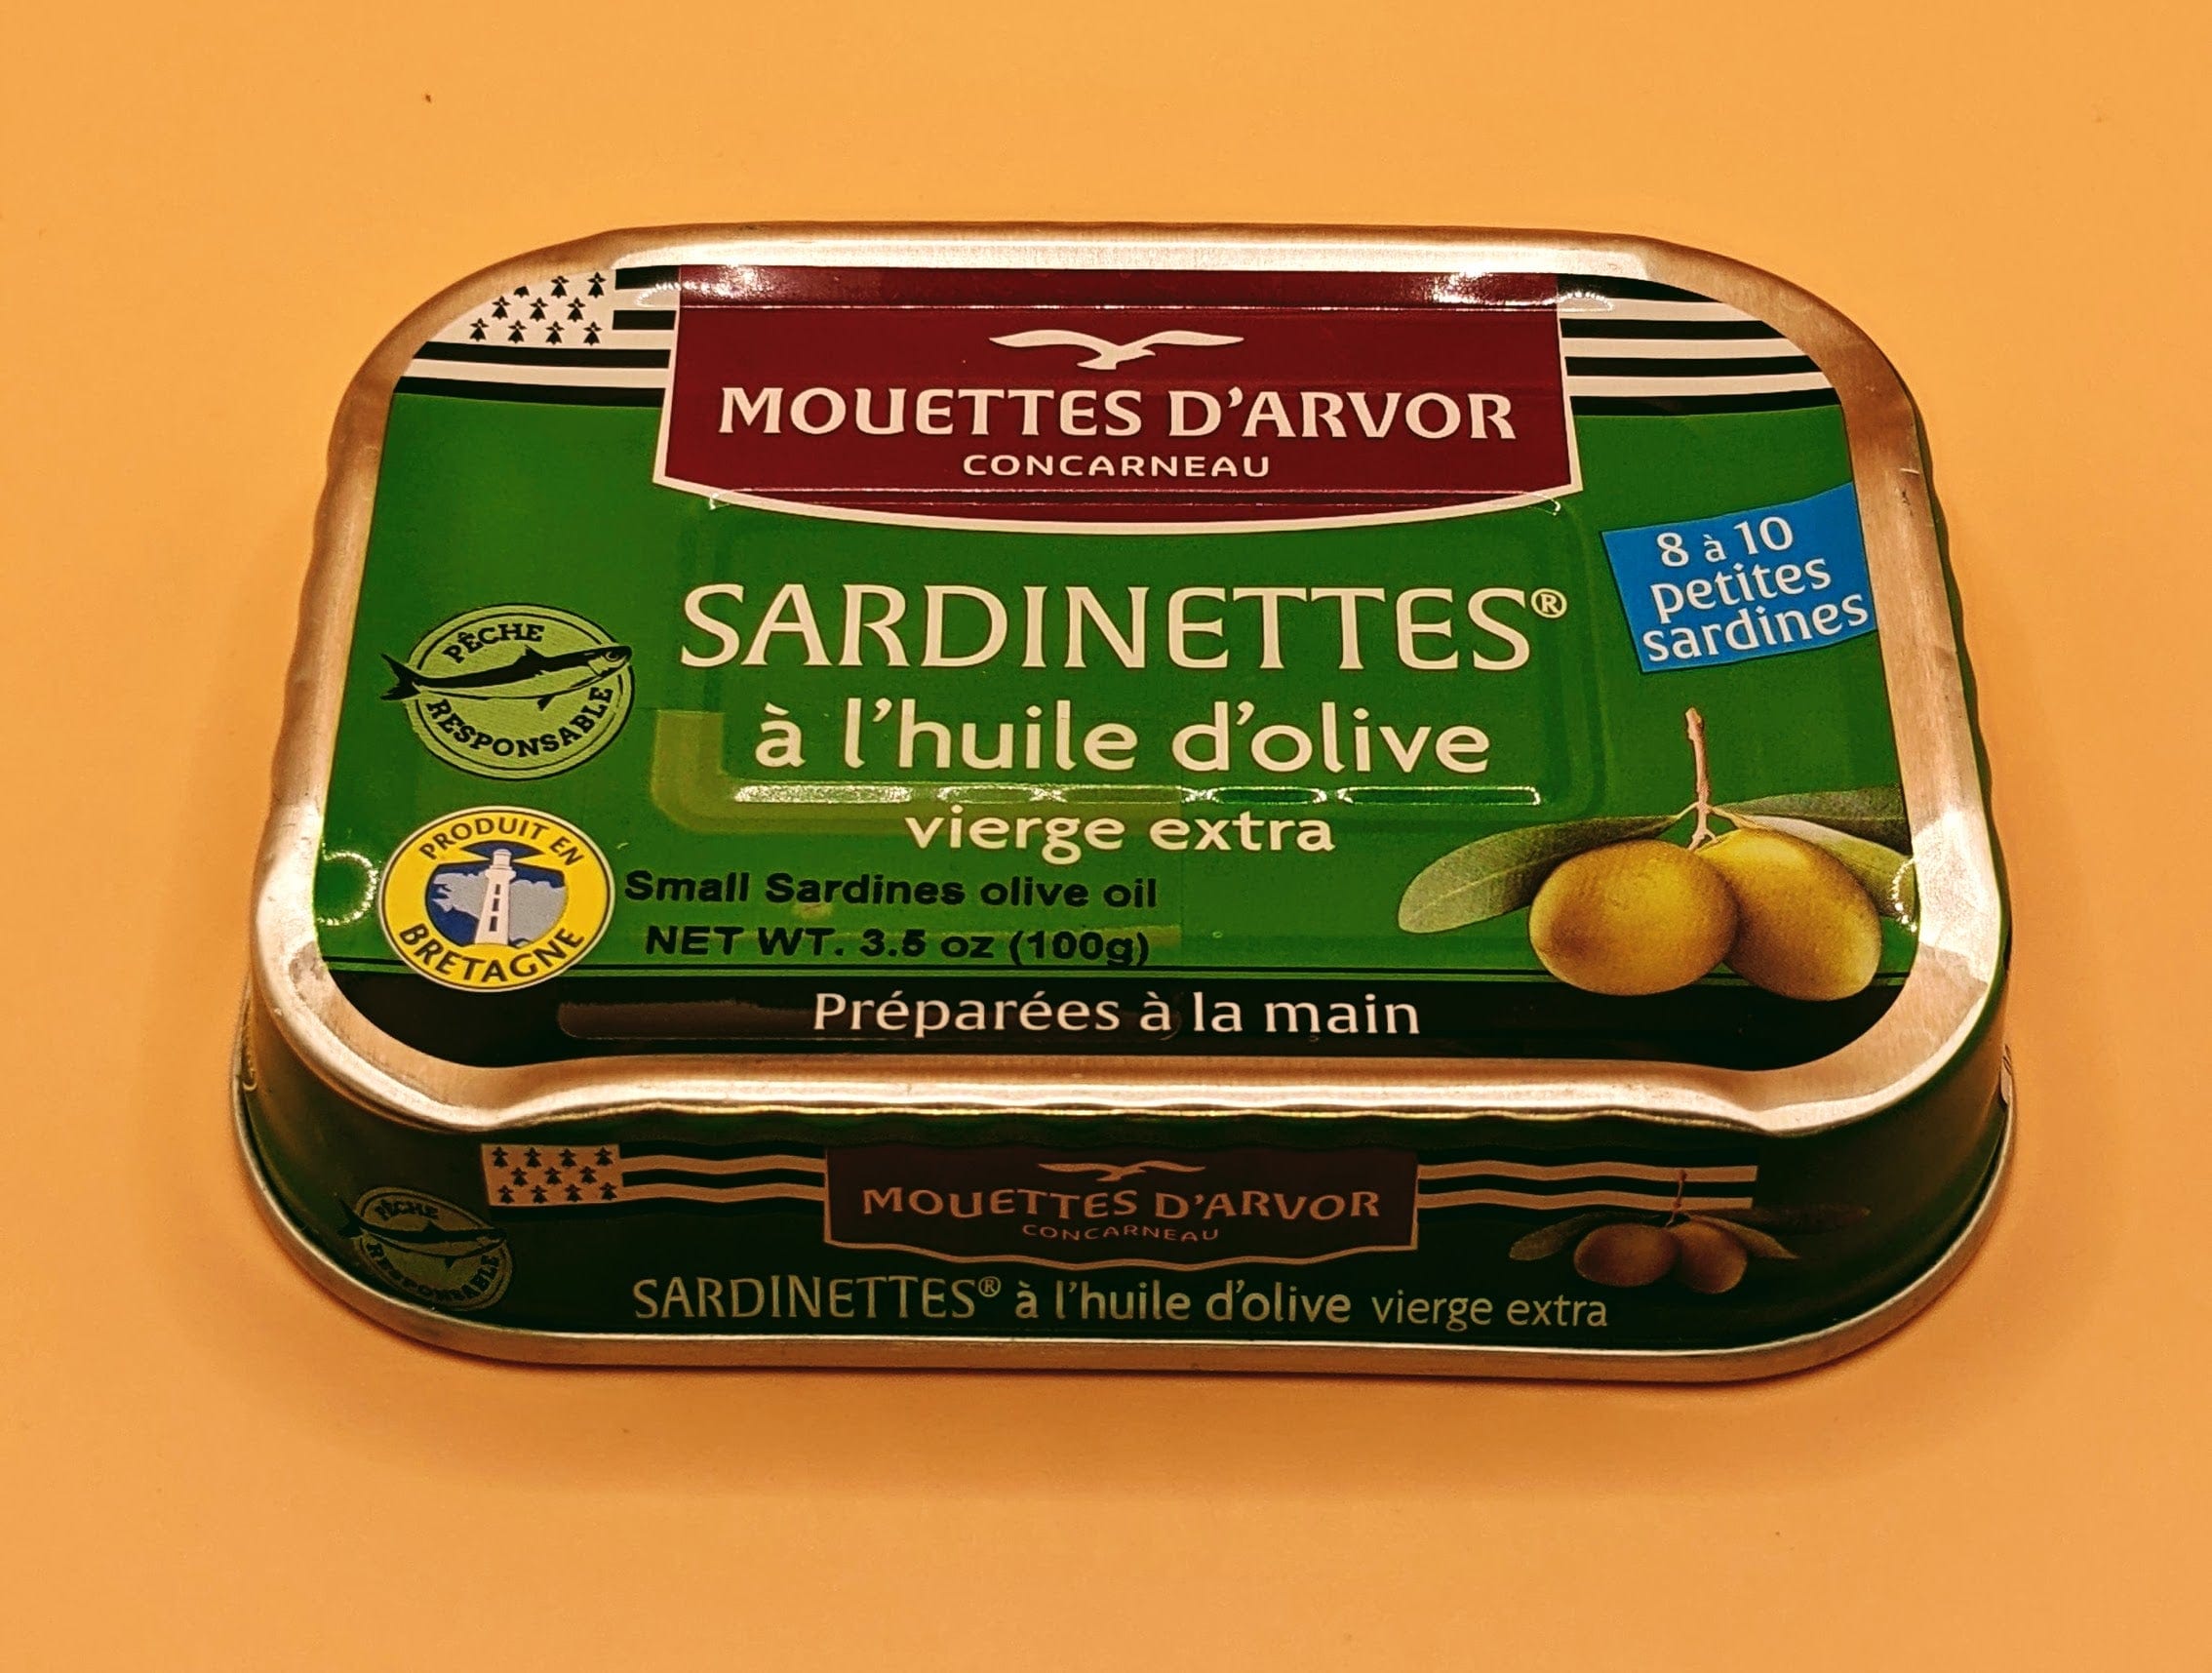 Sardines, Lot de 240, arrondis, sols normaux & durs, sardines